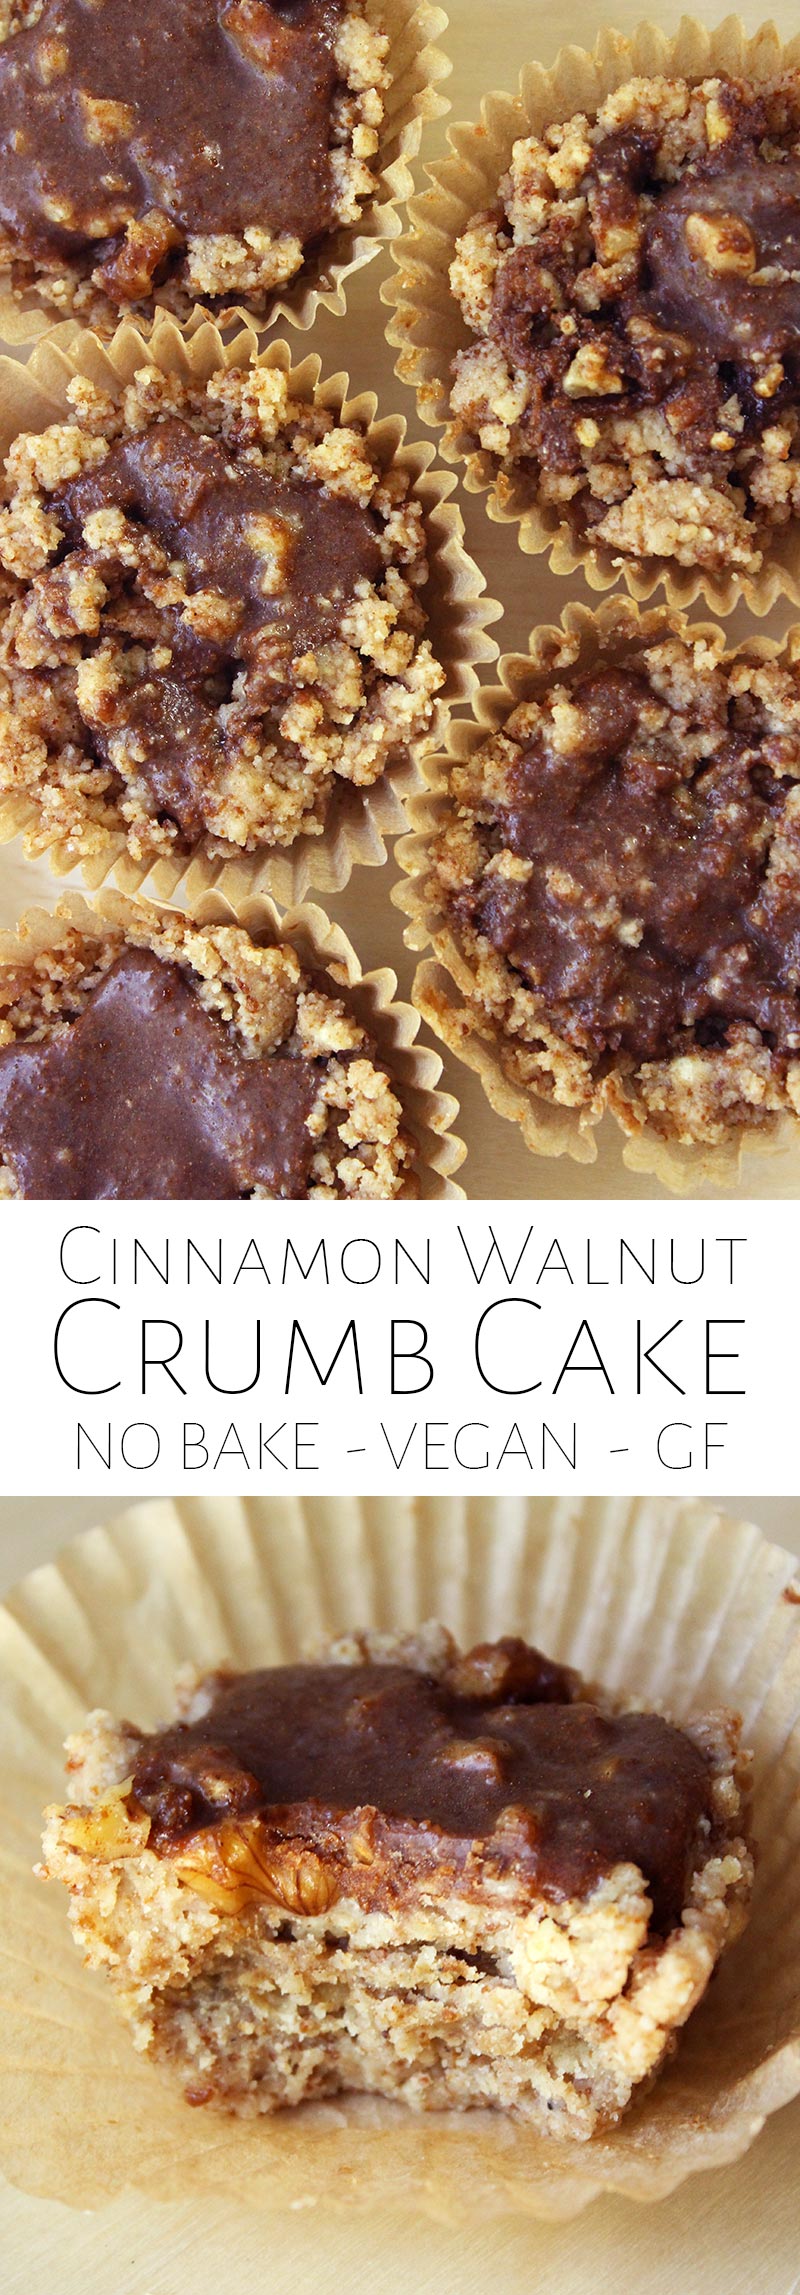 No Bake Cinnamon Walnut Crumb Cake